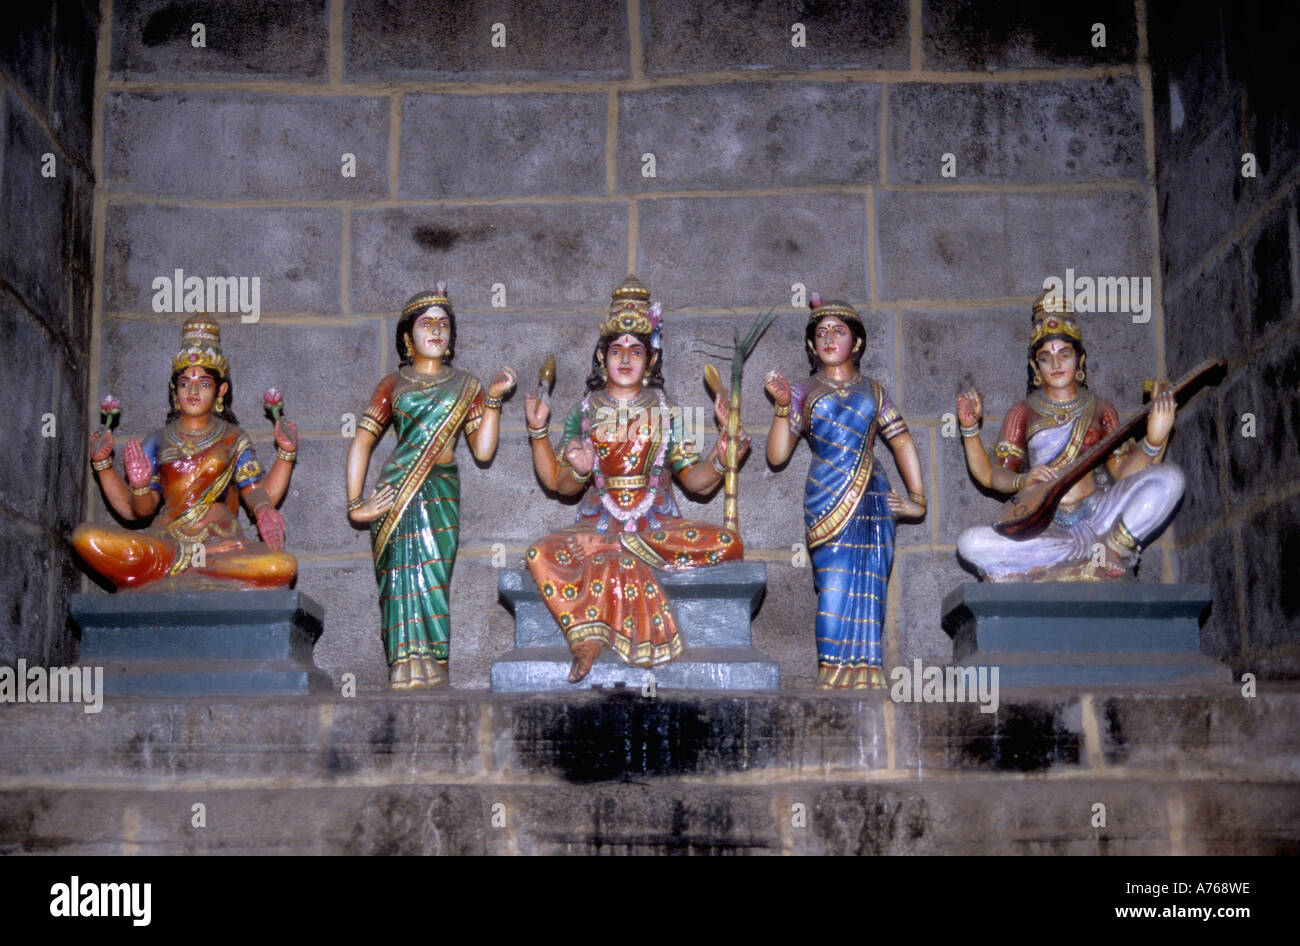 Porcelana representaciones de diosas hindúes en un santuario a medio camino de la roca fuerte de Tiruchirapalli de Tamil Nadu, India Foto de stock